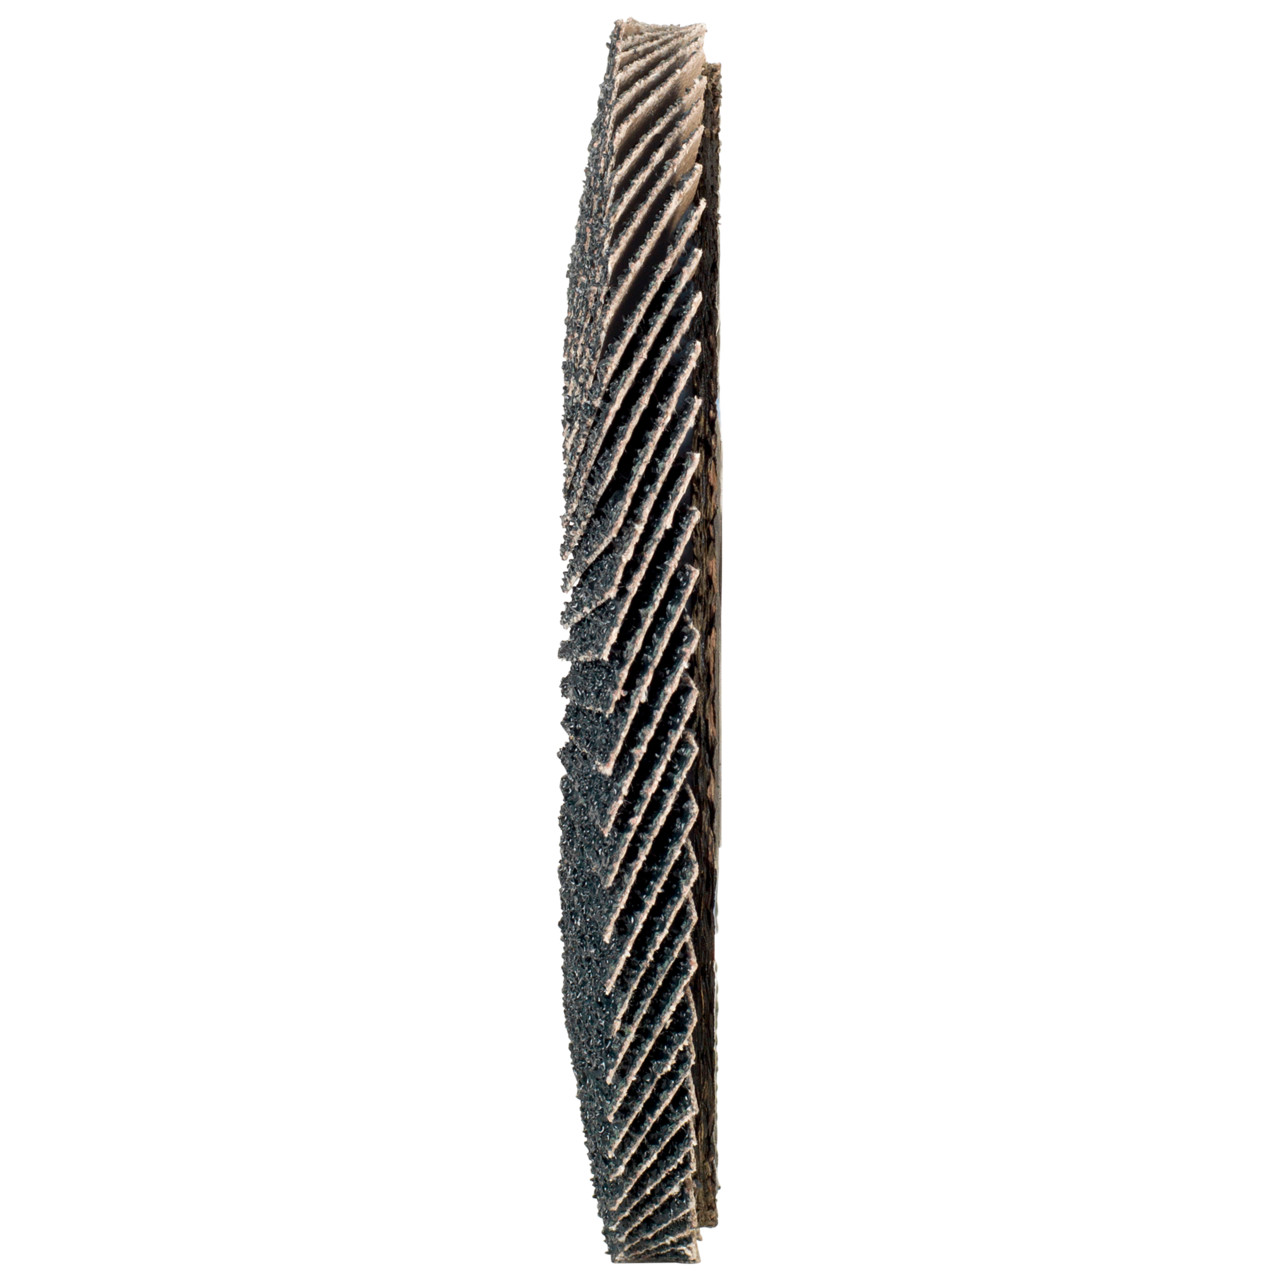 TYROLIT Fächerscheibe DxH 115x22,2 2in1 für Stahl & Edelstahl, P80, Form: 28A - gerade Ausführung (Glasfaserträgerkörperausführung), Art. 668691